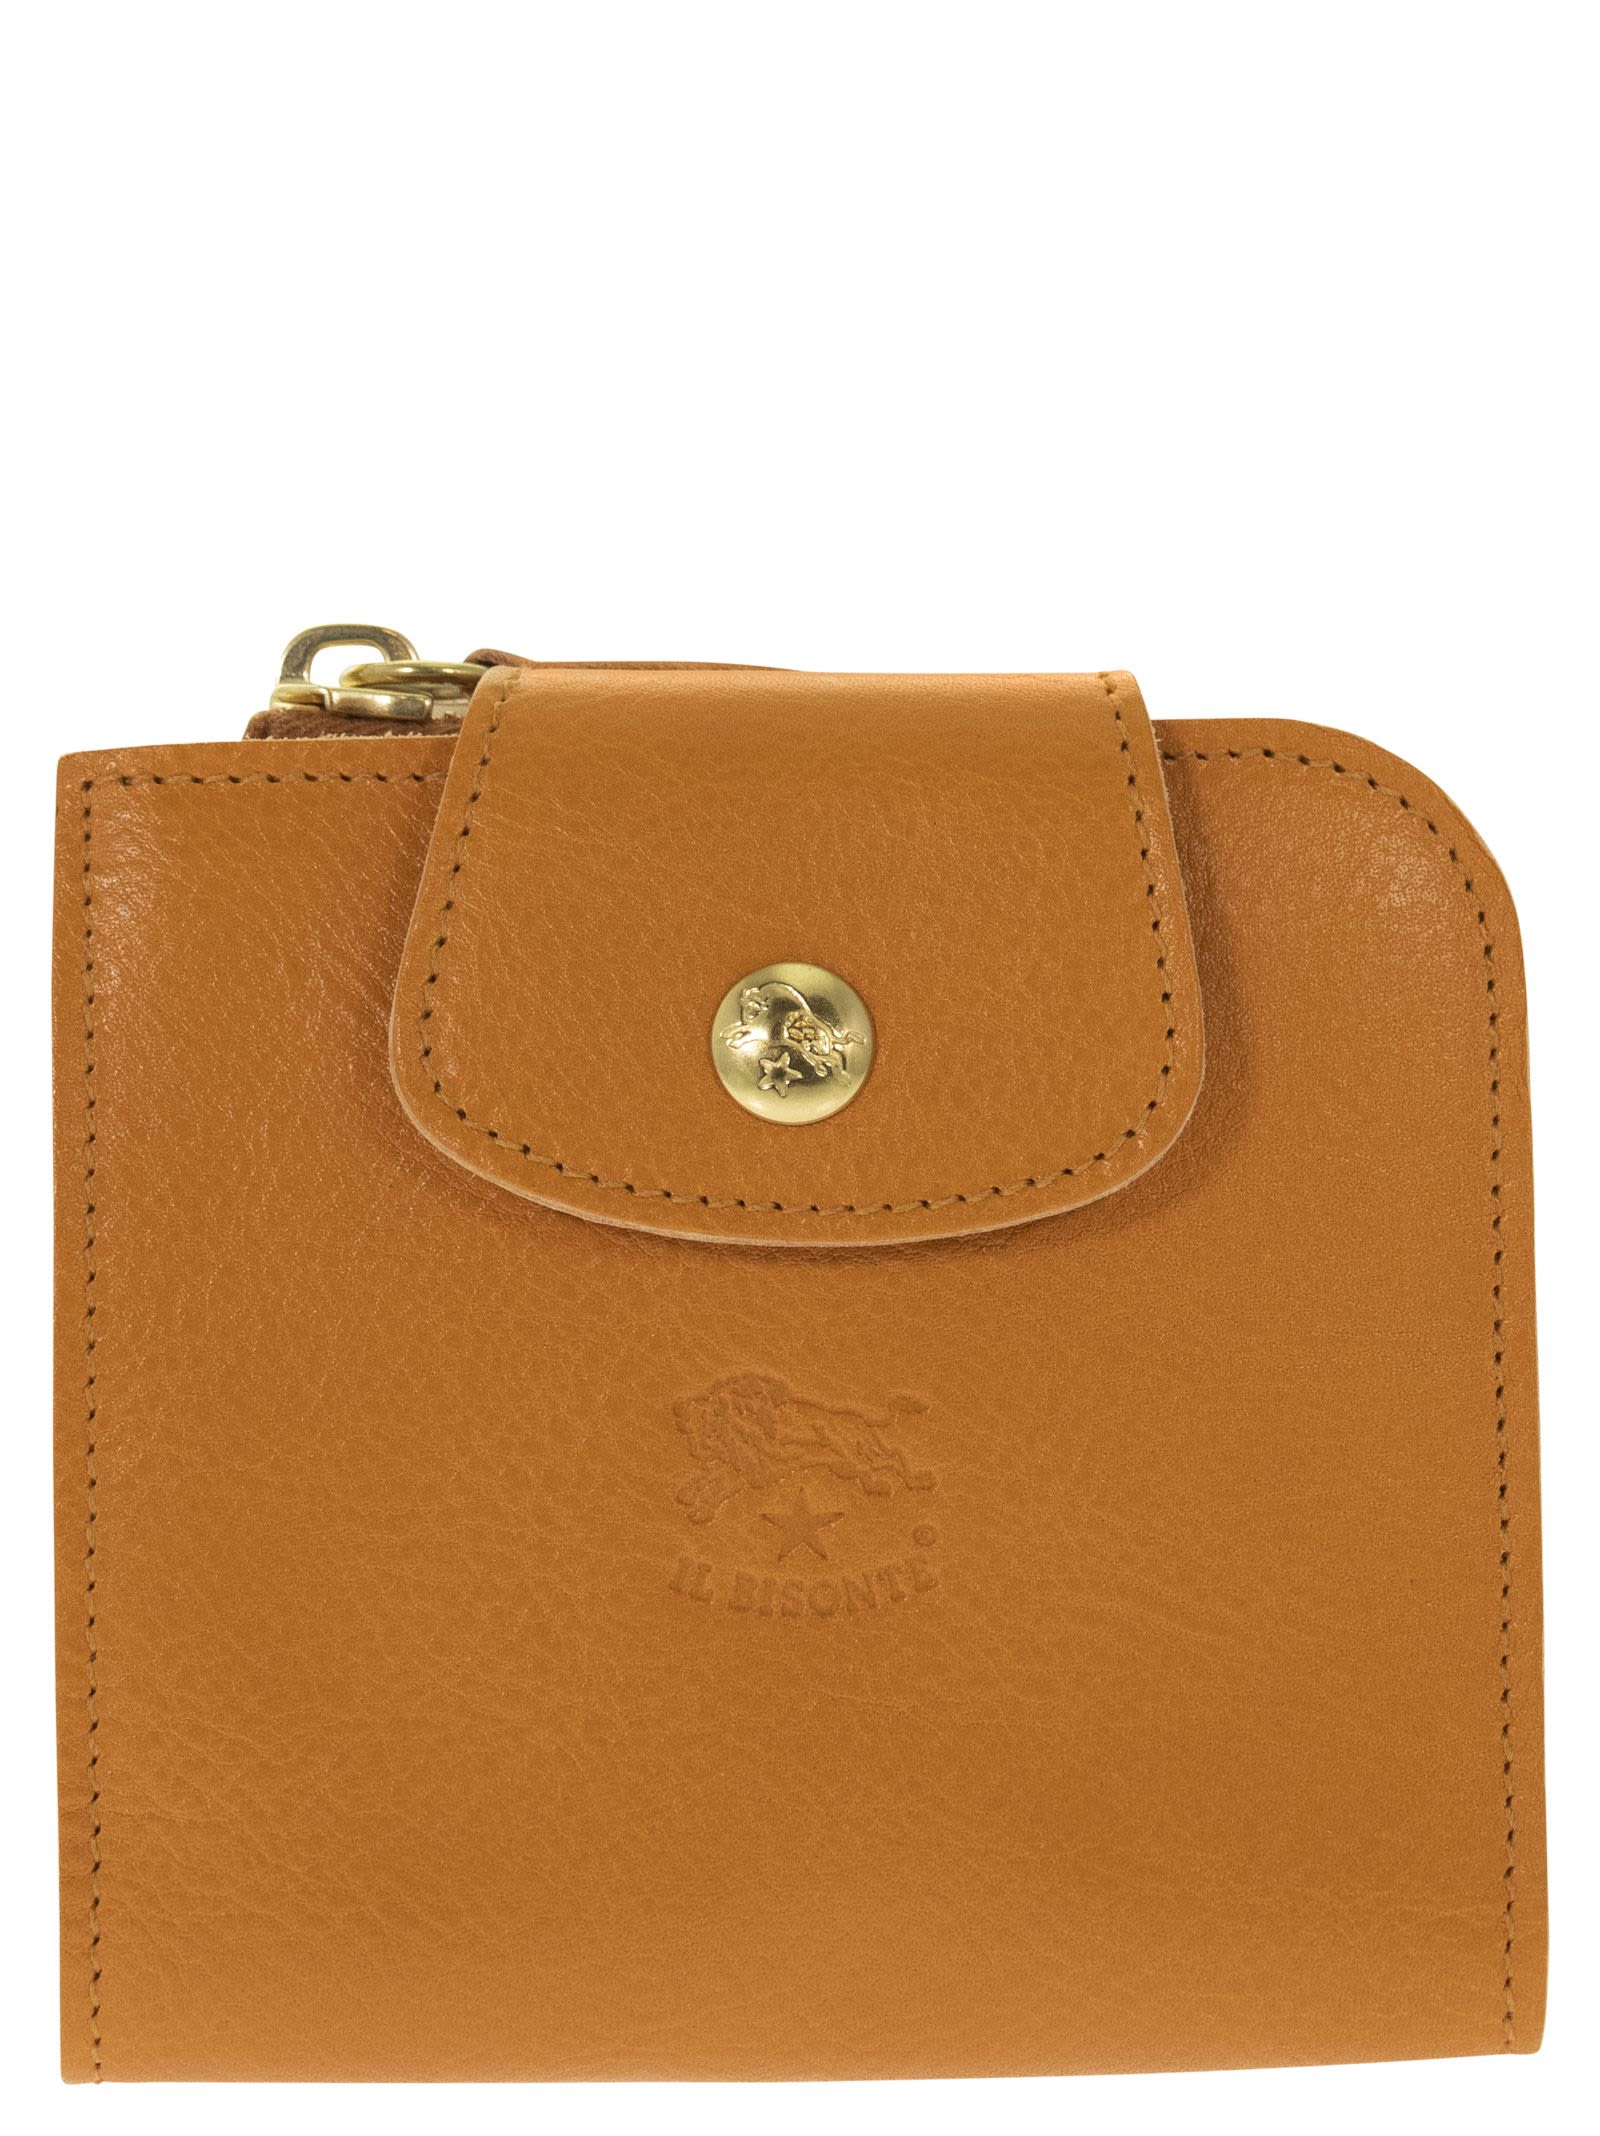 Il Bisonte Medium Acero - Medium Leather Wallet